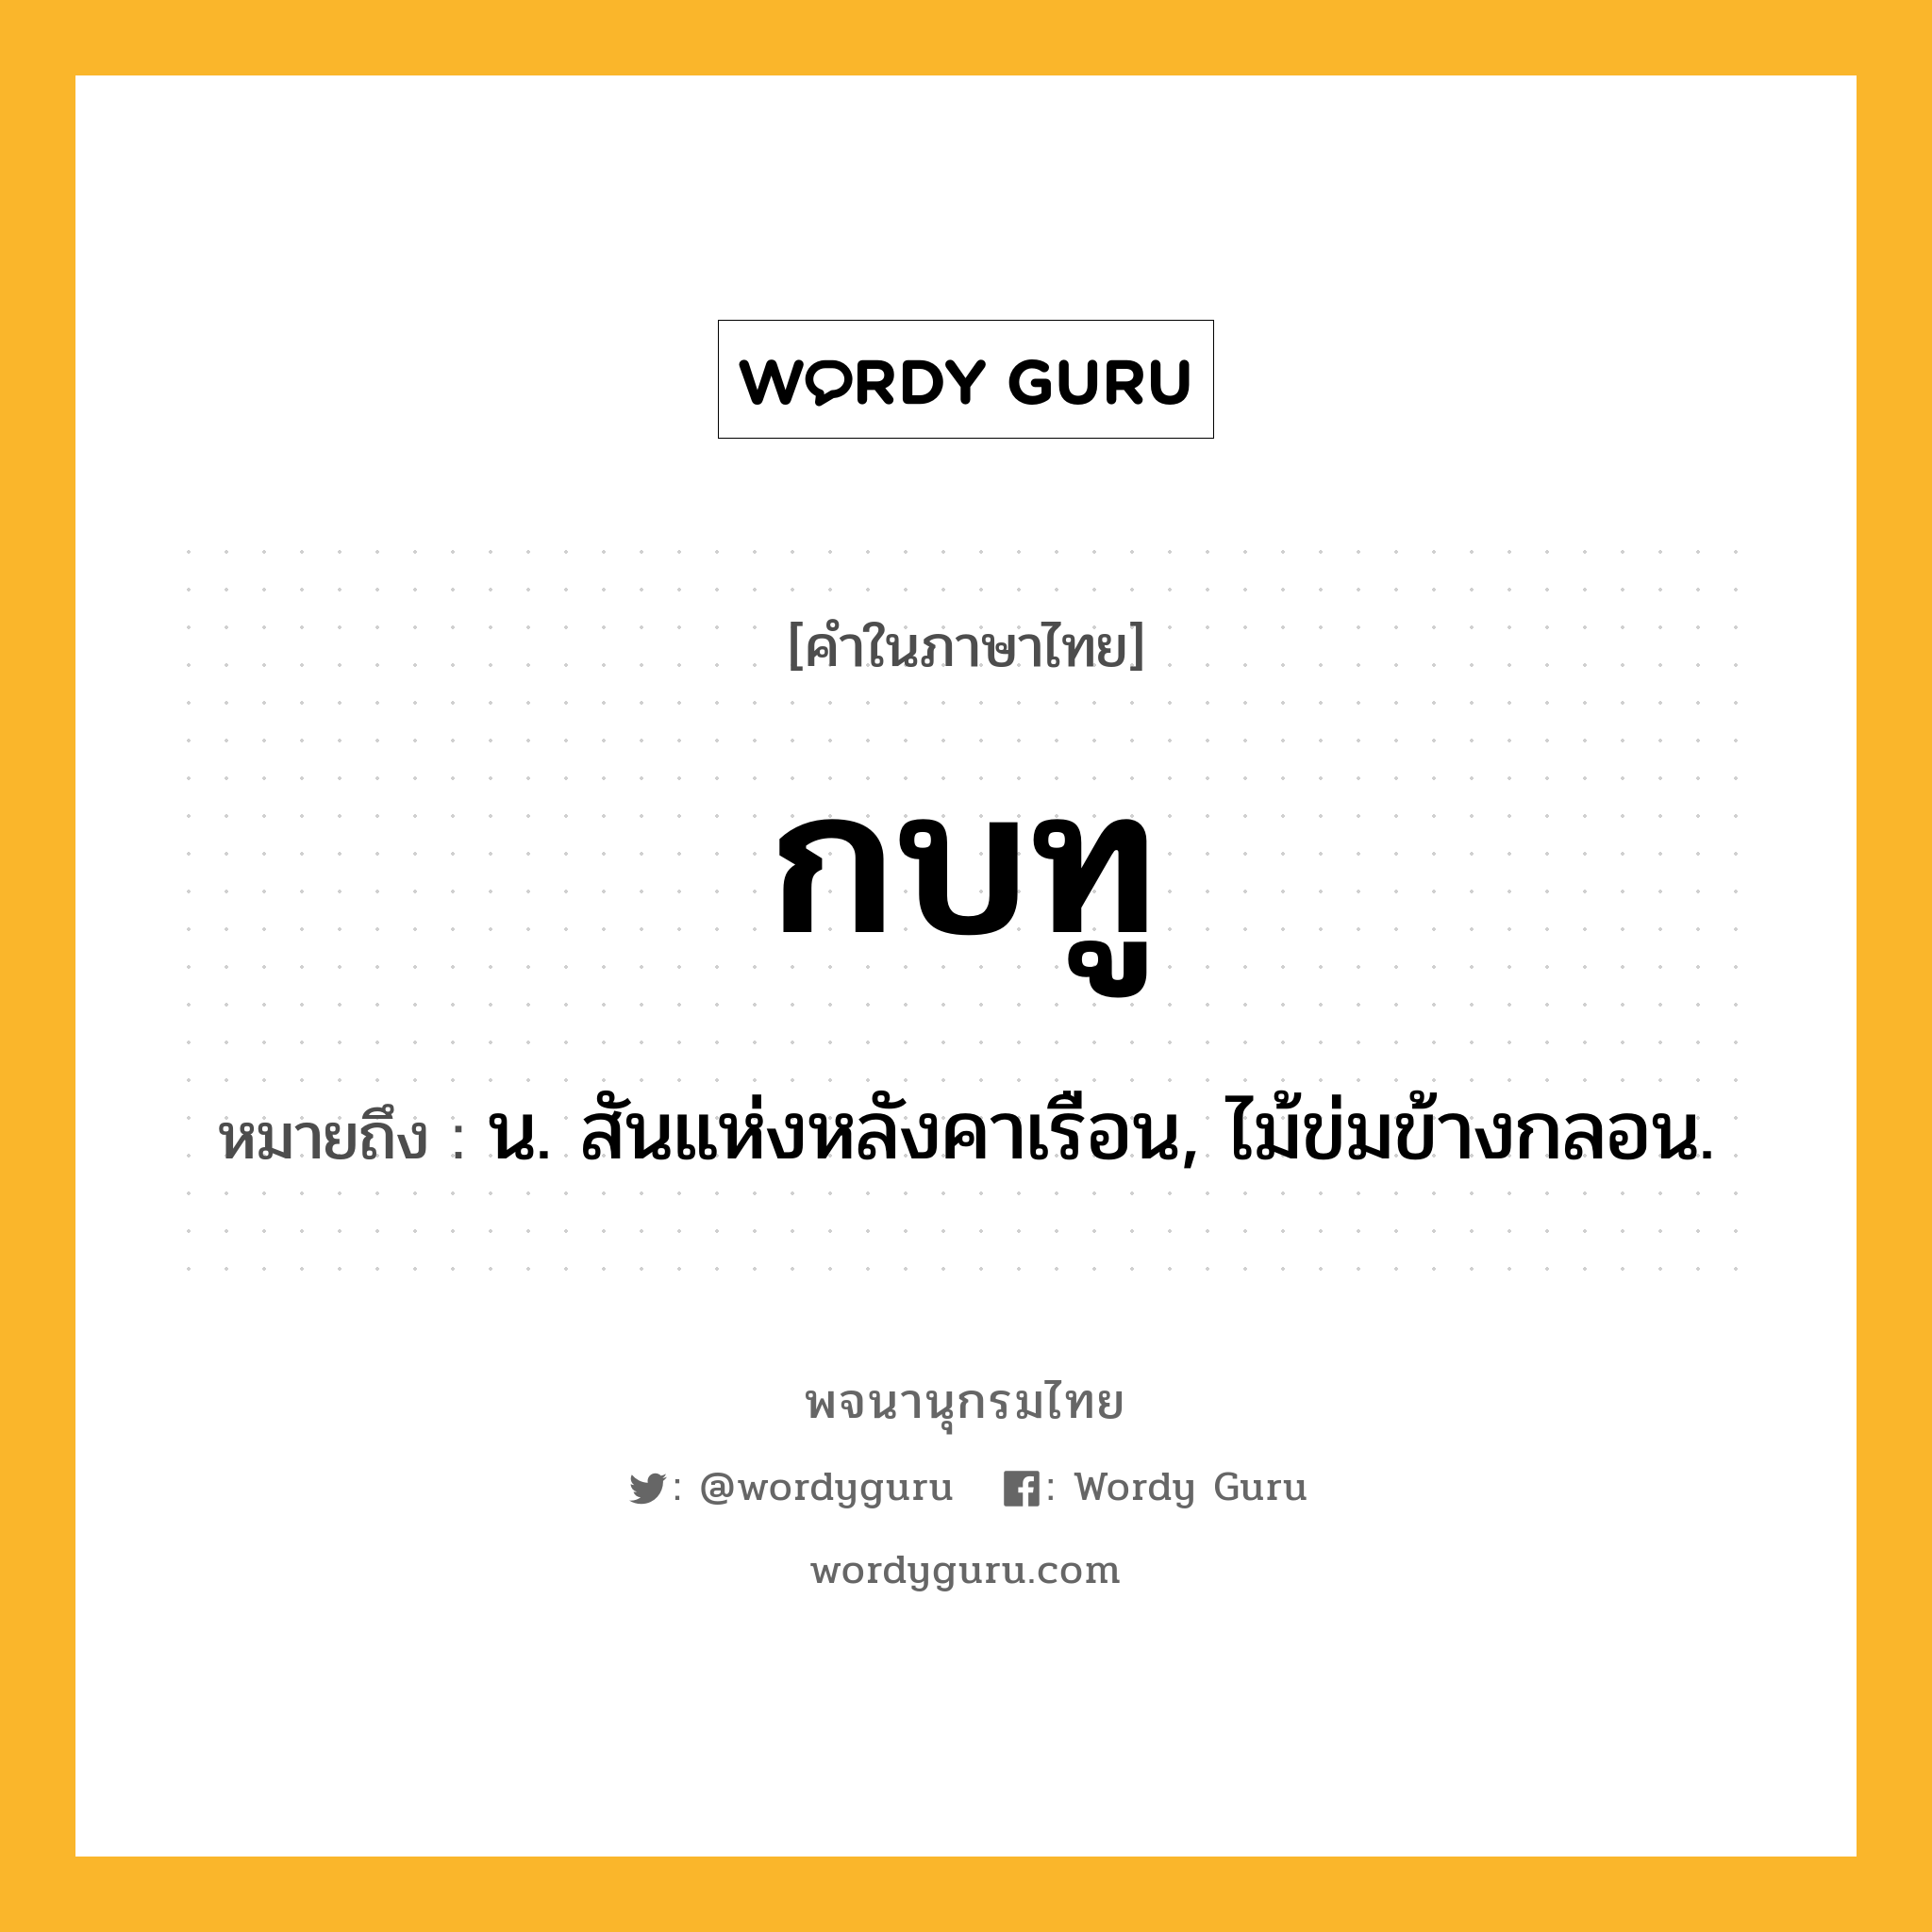 กบทู ความหมาย หมายถึงอะไร?, คำในภาษาไทย กบทู หมายถึง น. สันแห่งหลังคาเรือน, ไม้ข่มข้างกลอน.